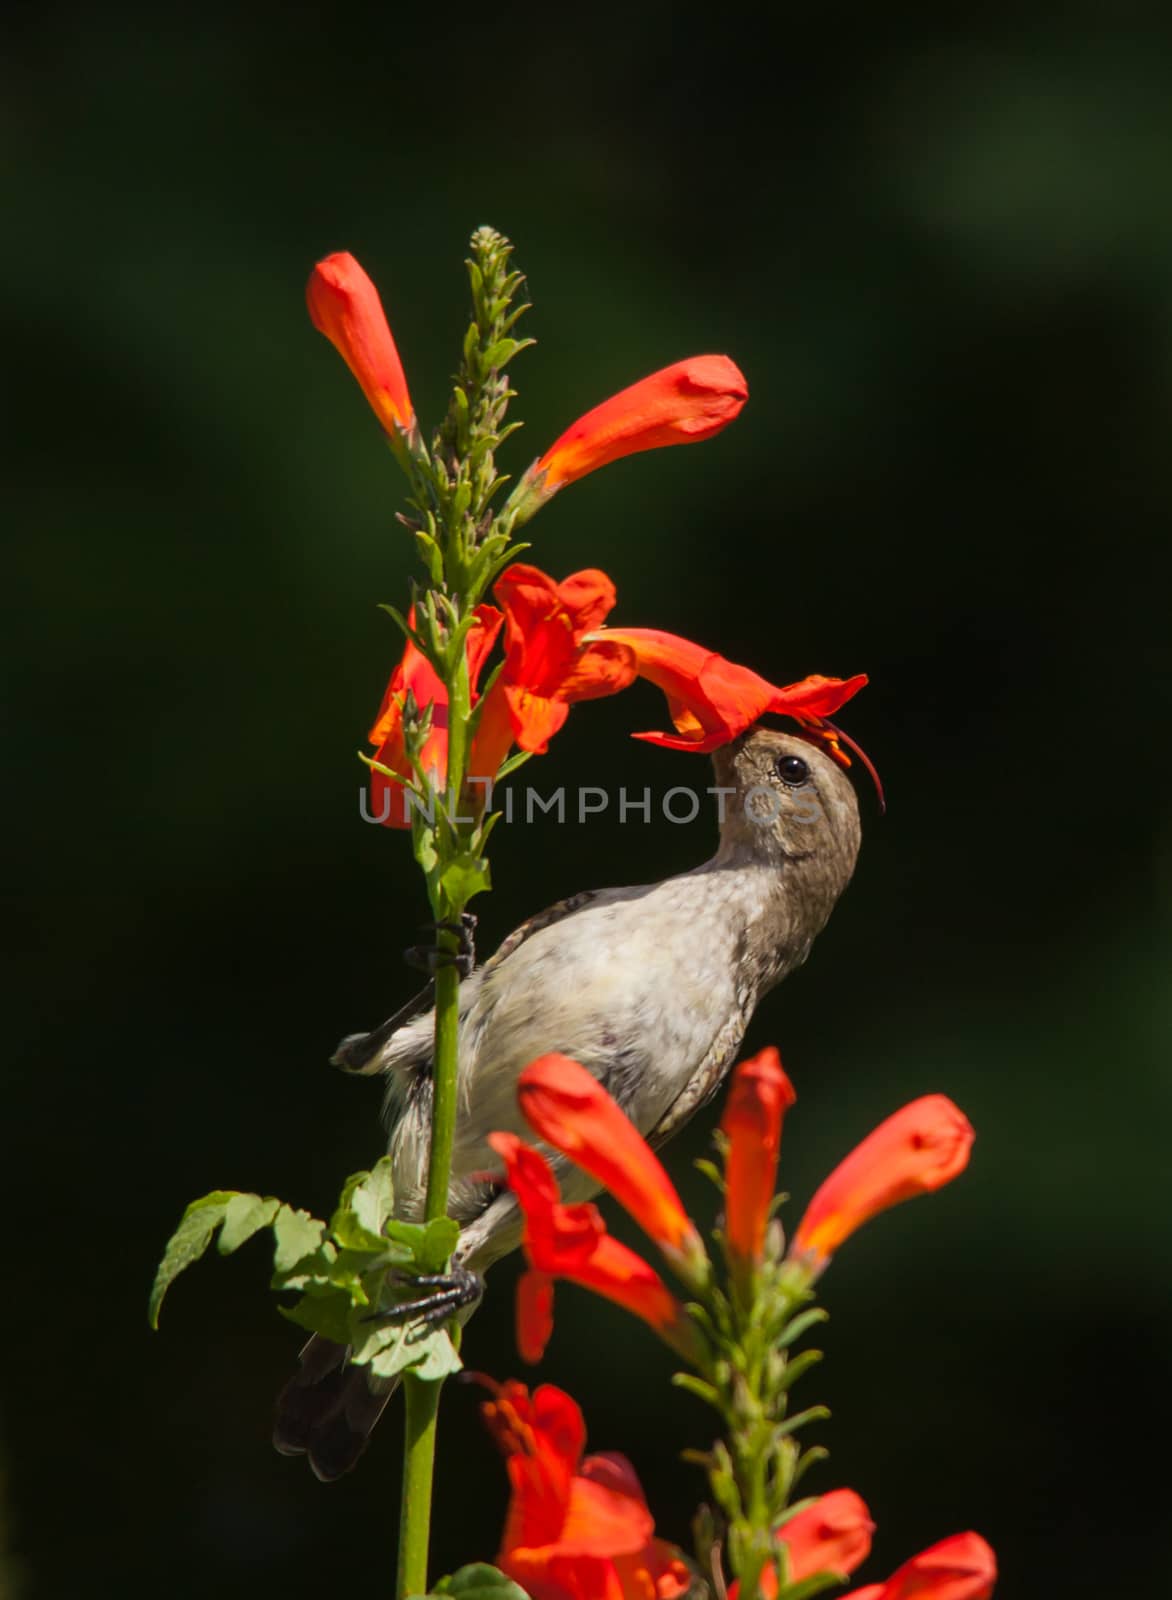 White-bellied Sunbird Cinnyris 10725 by kobus_peche